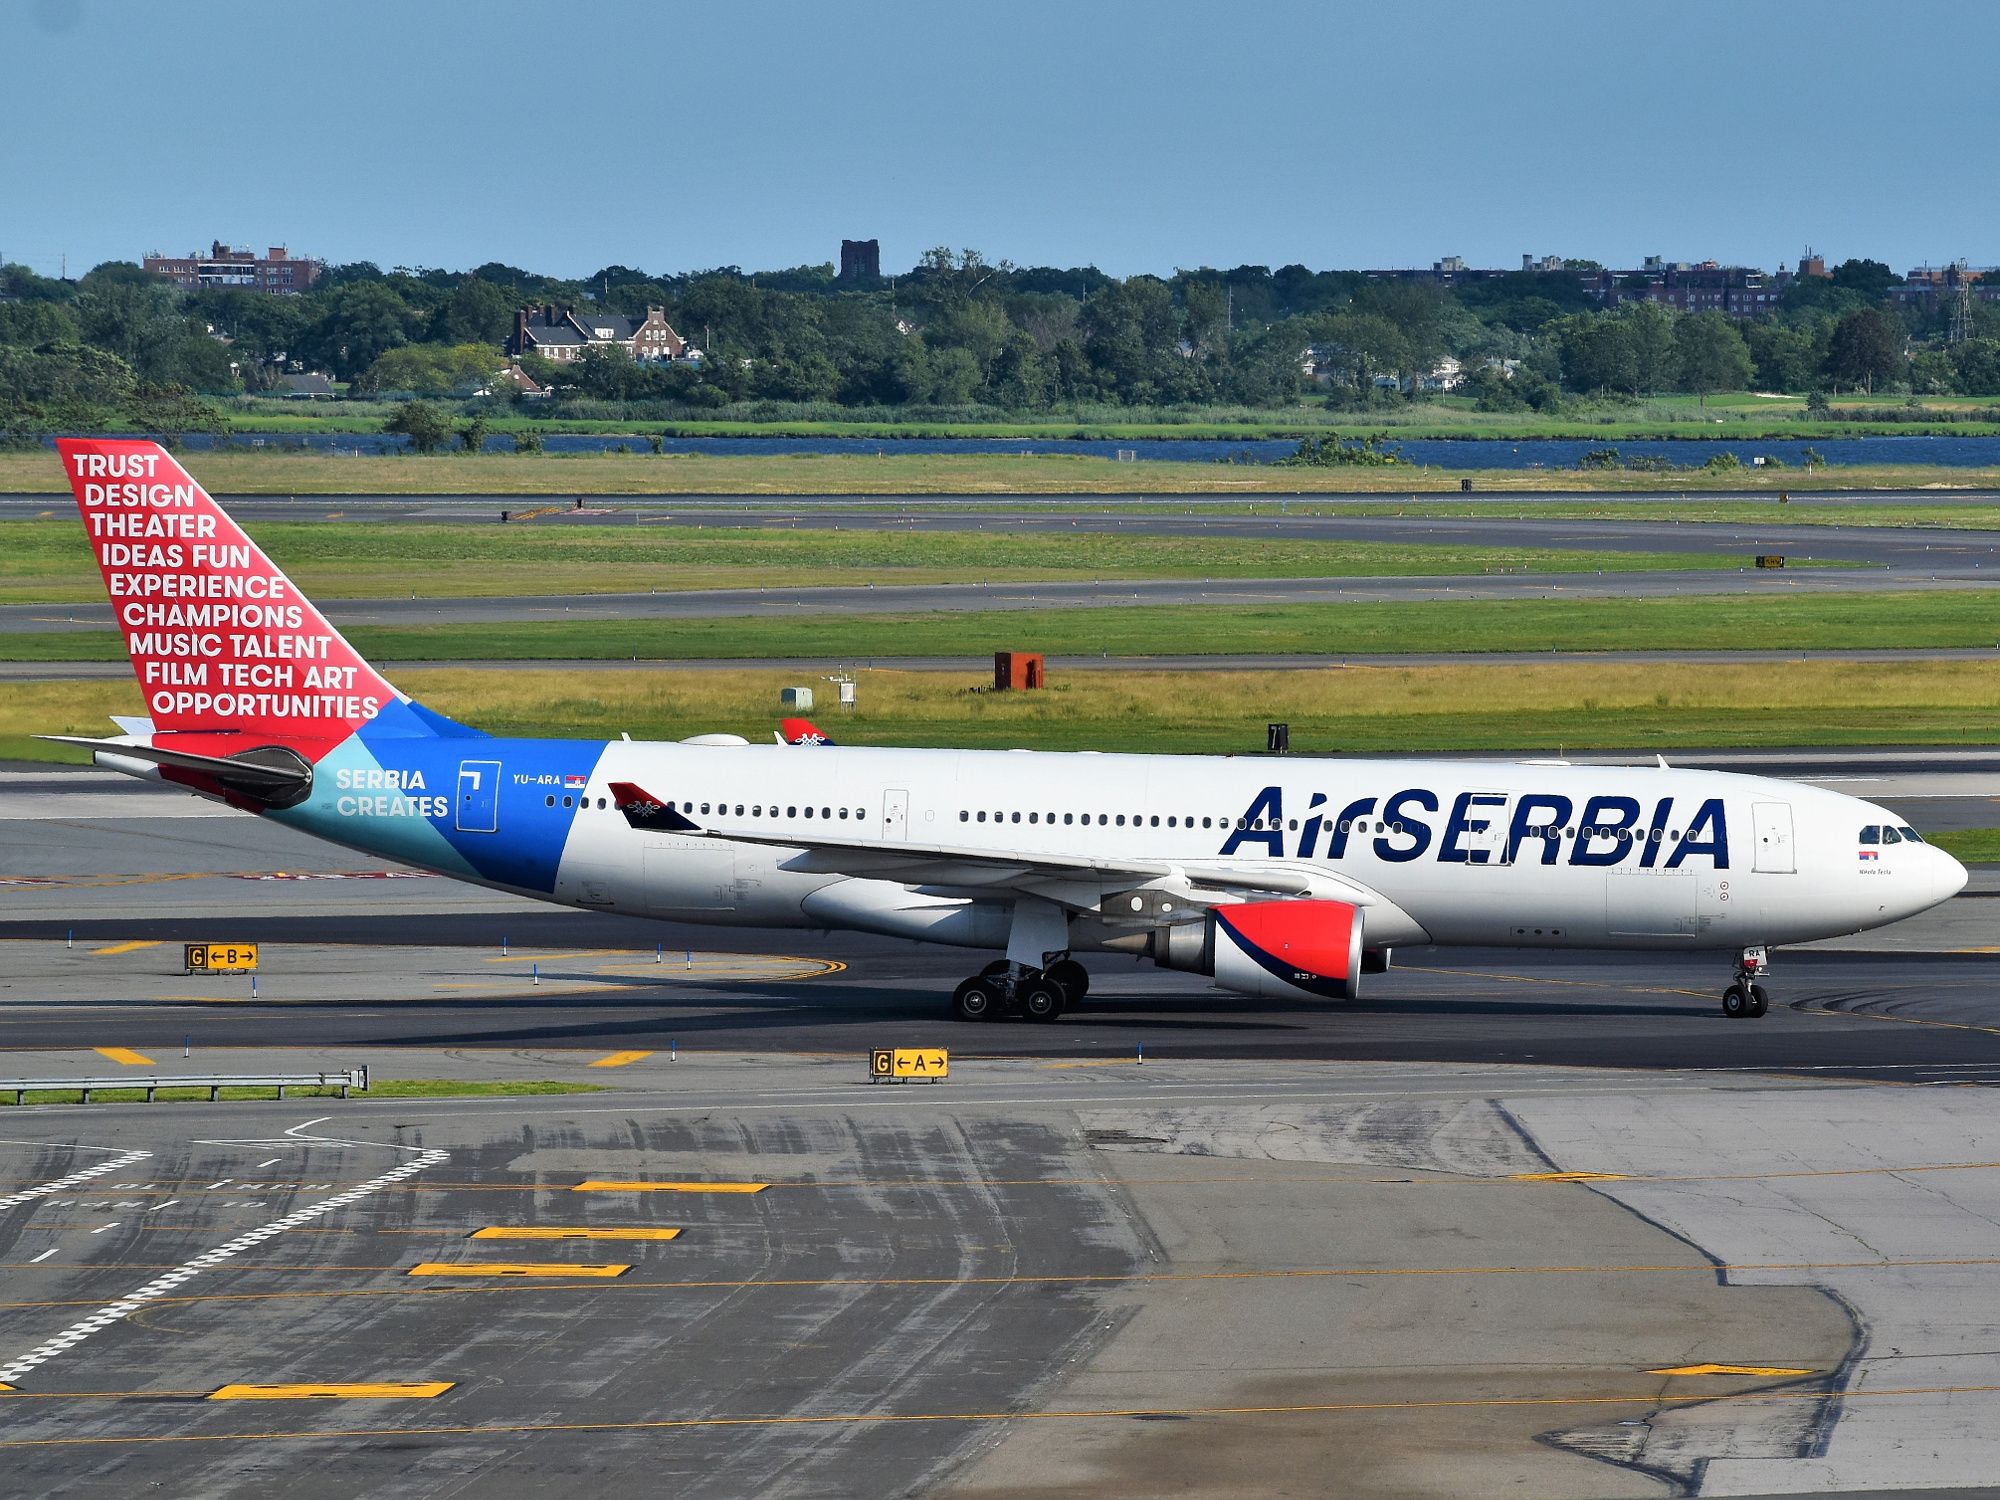 Air Serbia Airbus A330-200